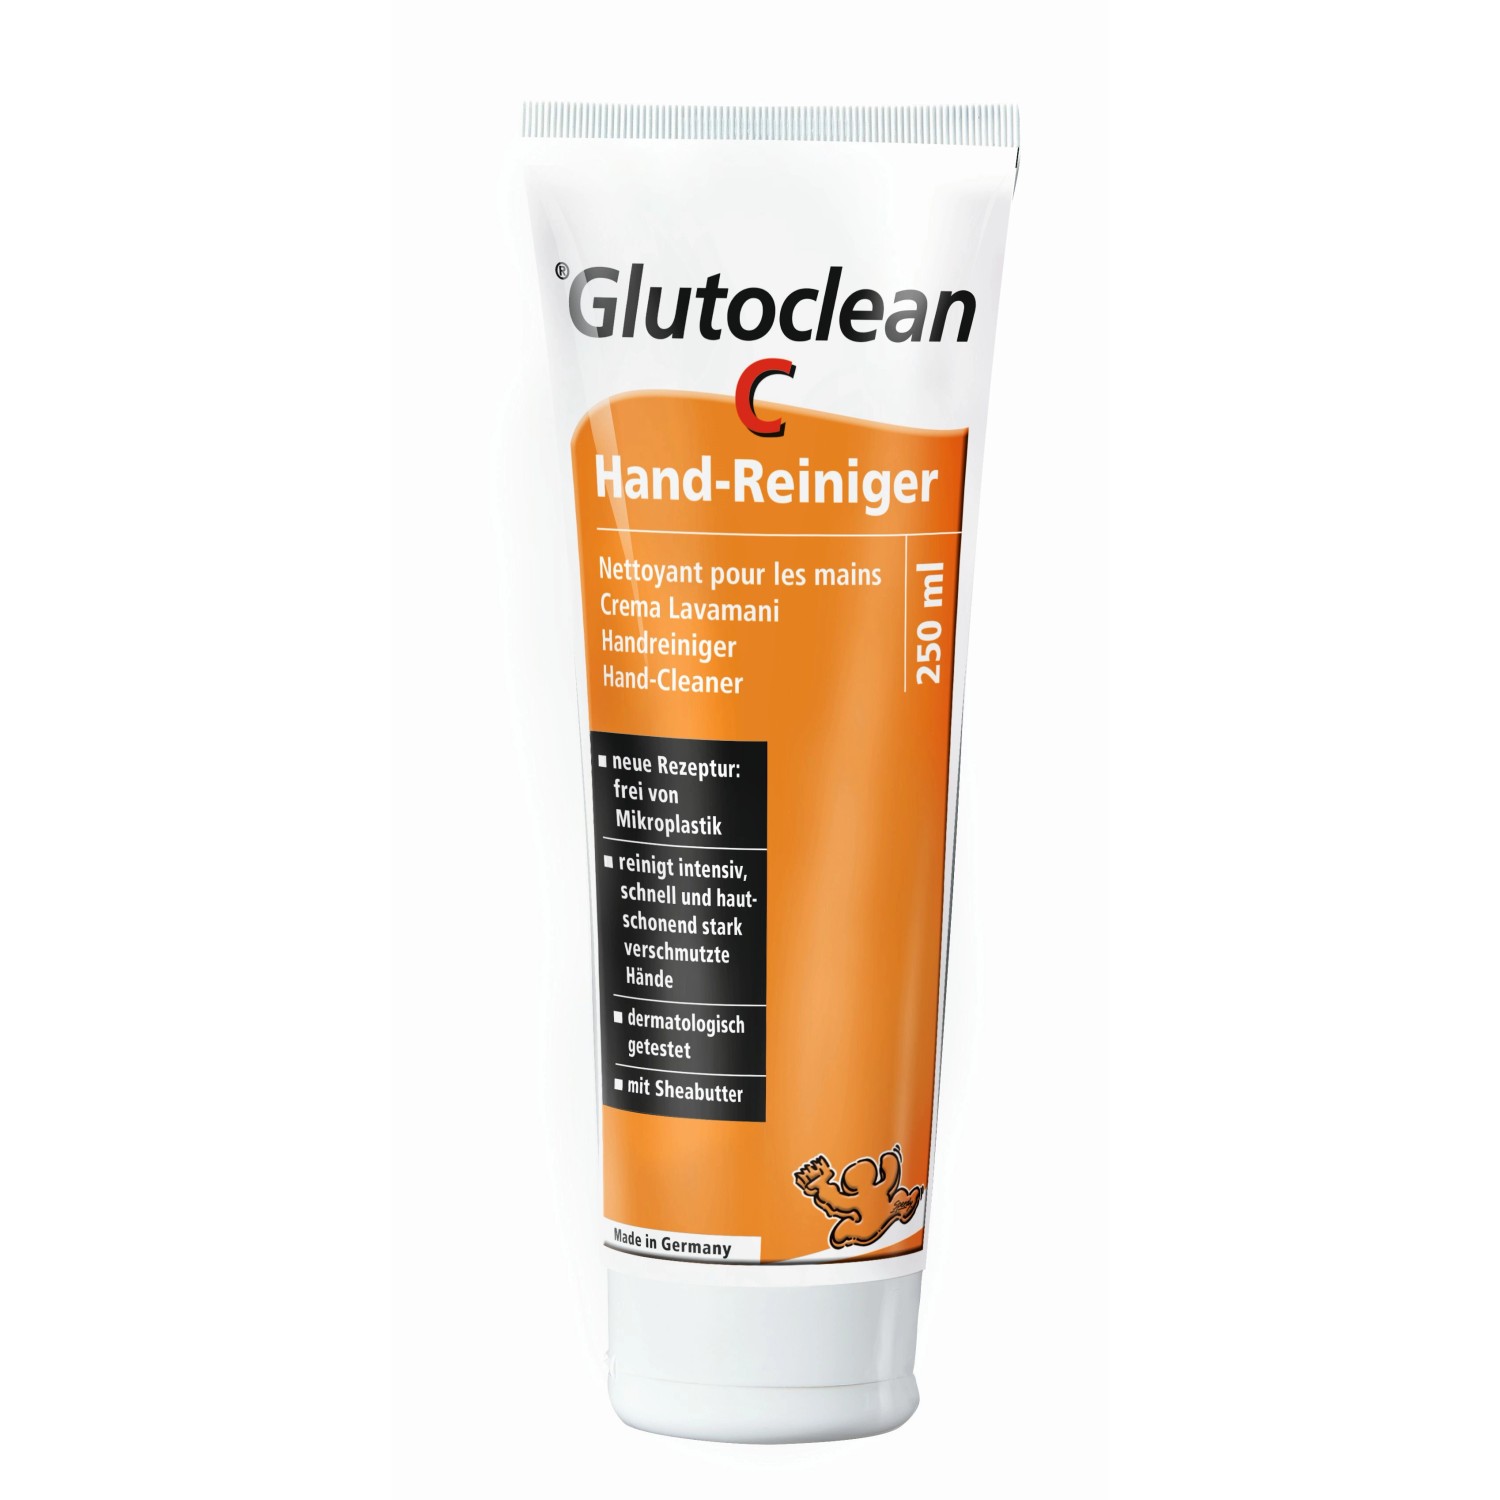 Glutoclean C Hand-Reiniger 250 ml